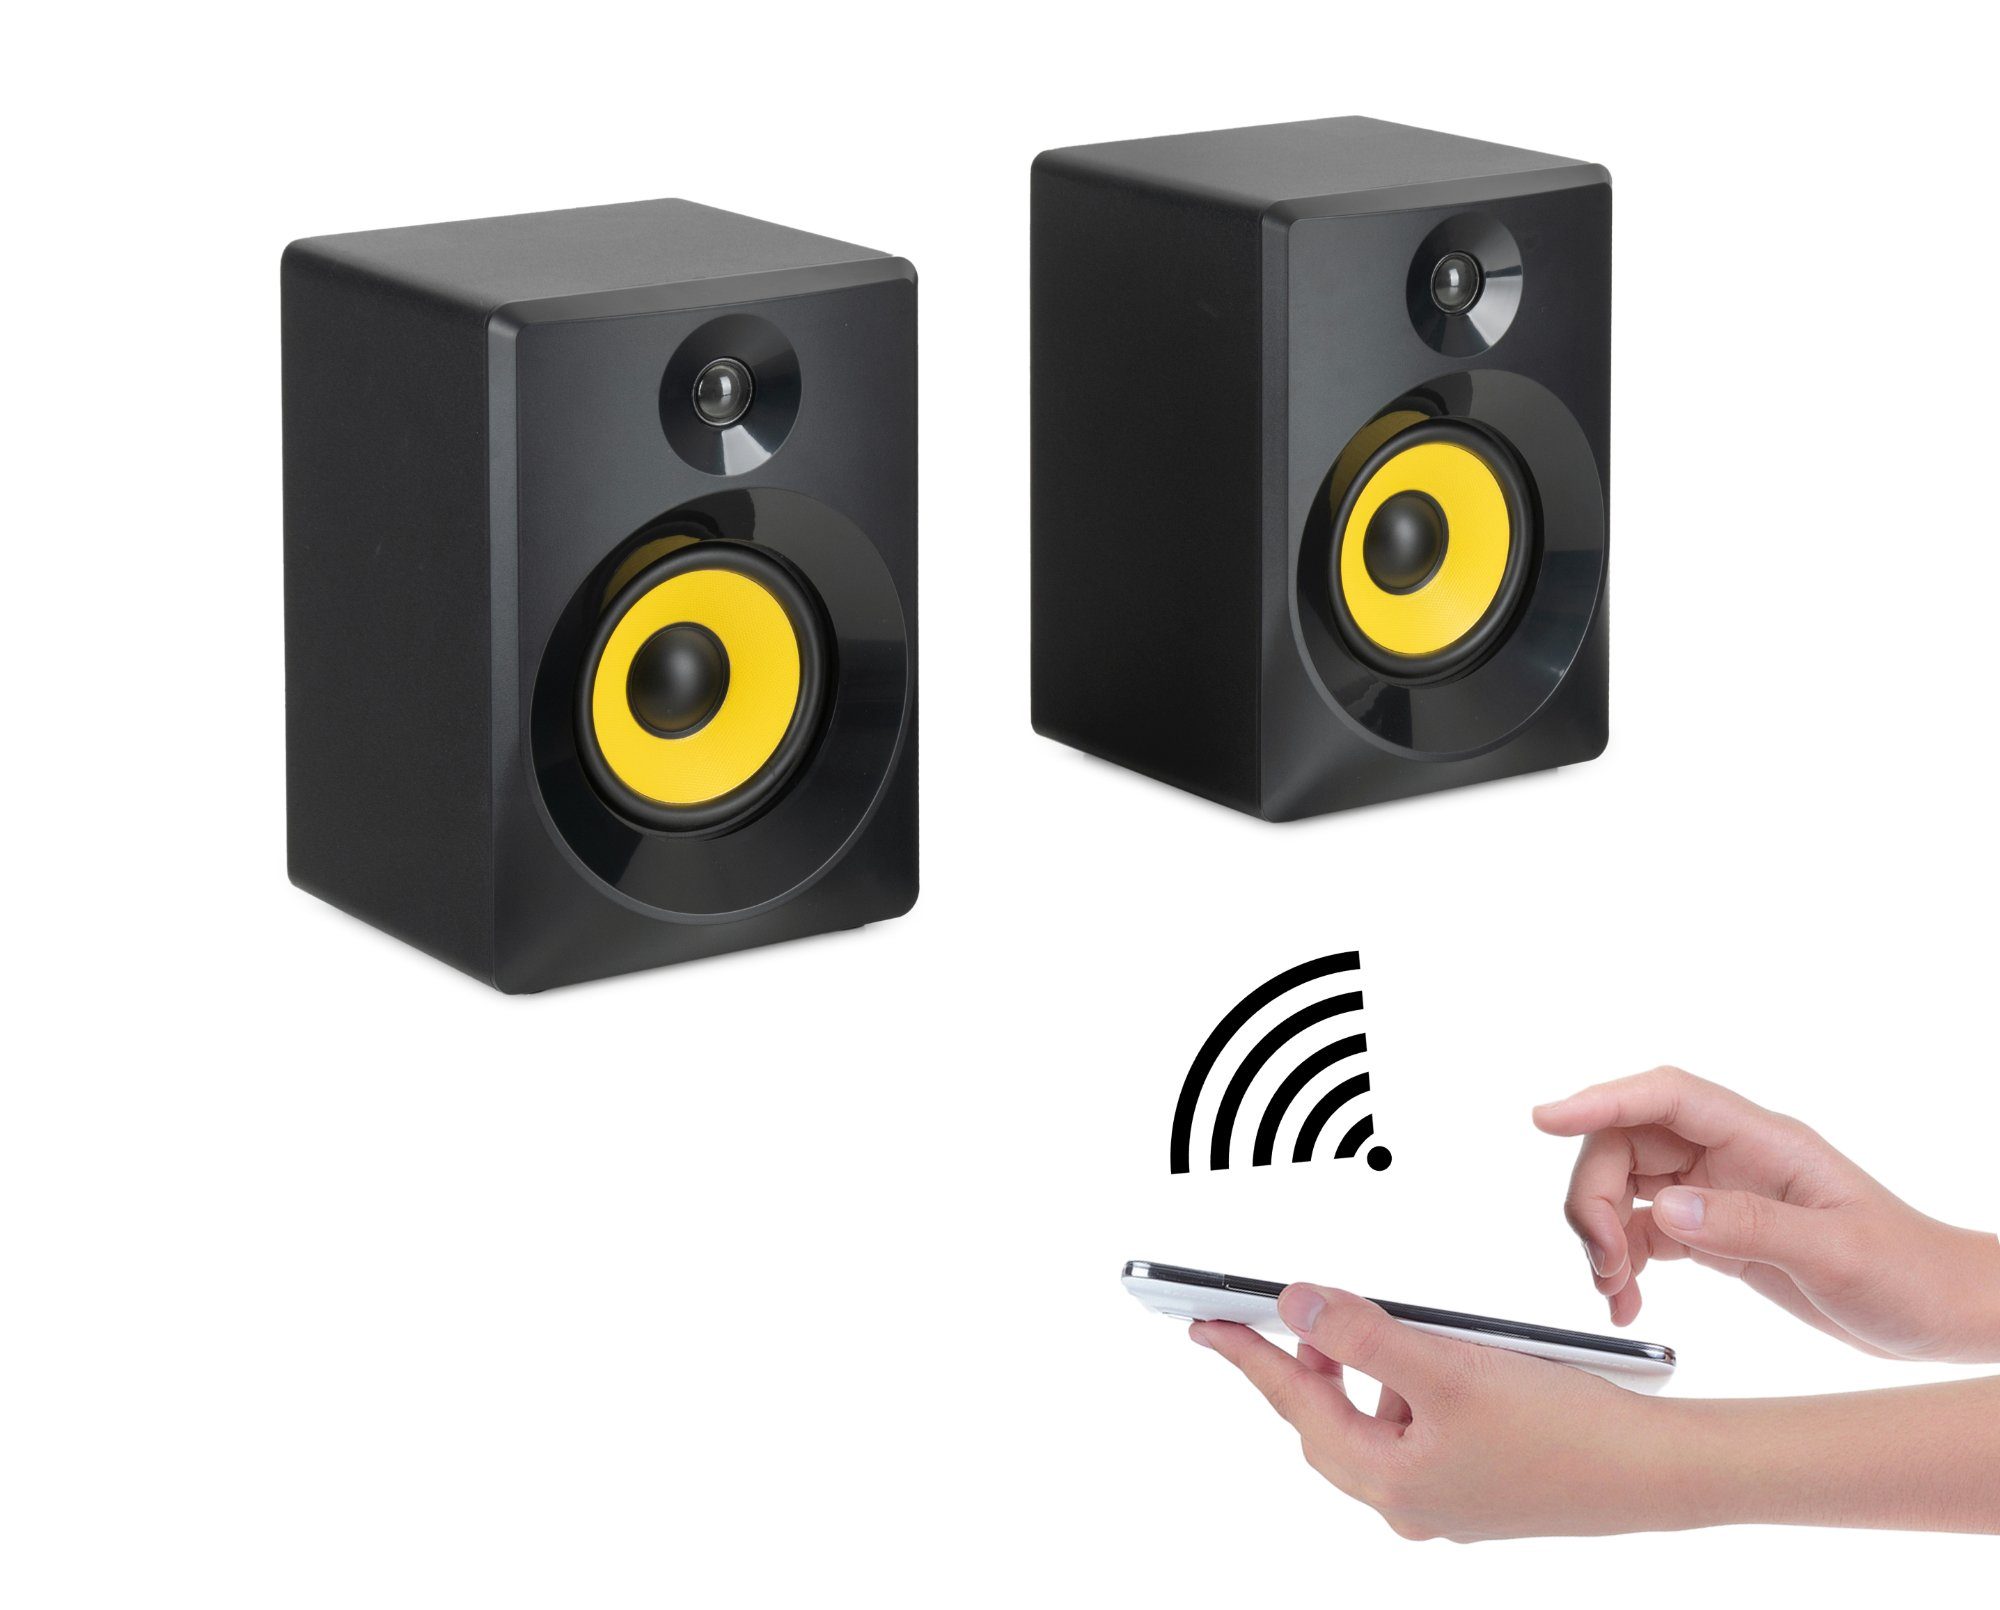 Studio McGrey Regallautsprecher 40 5.1, Lautsprecher Tiefen) und Tonregler Paar Monitor 2.0 W, Multimedia mit MM-440BT (Bluetooth für Höhen